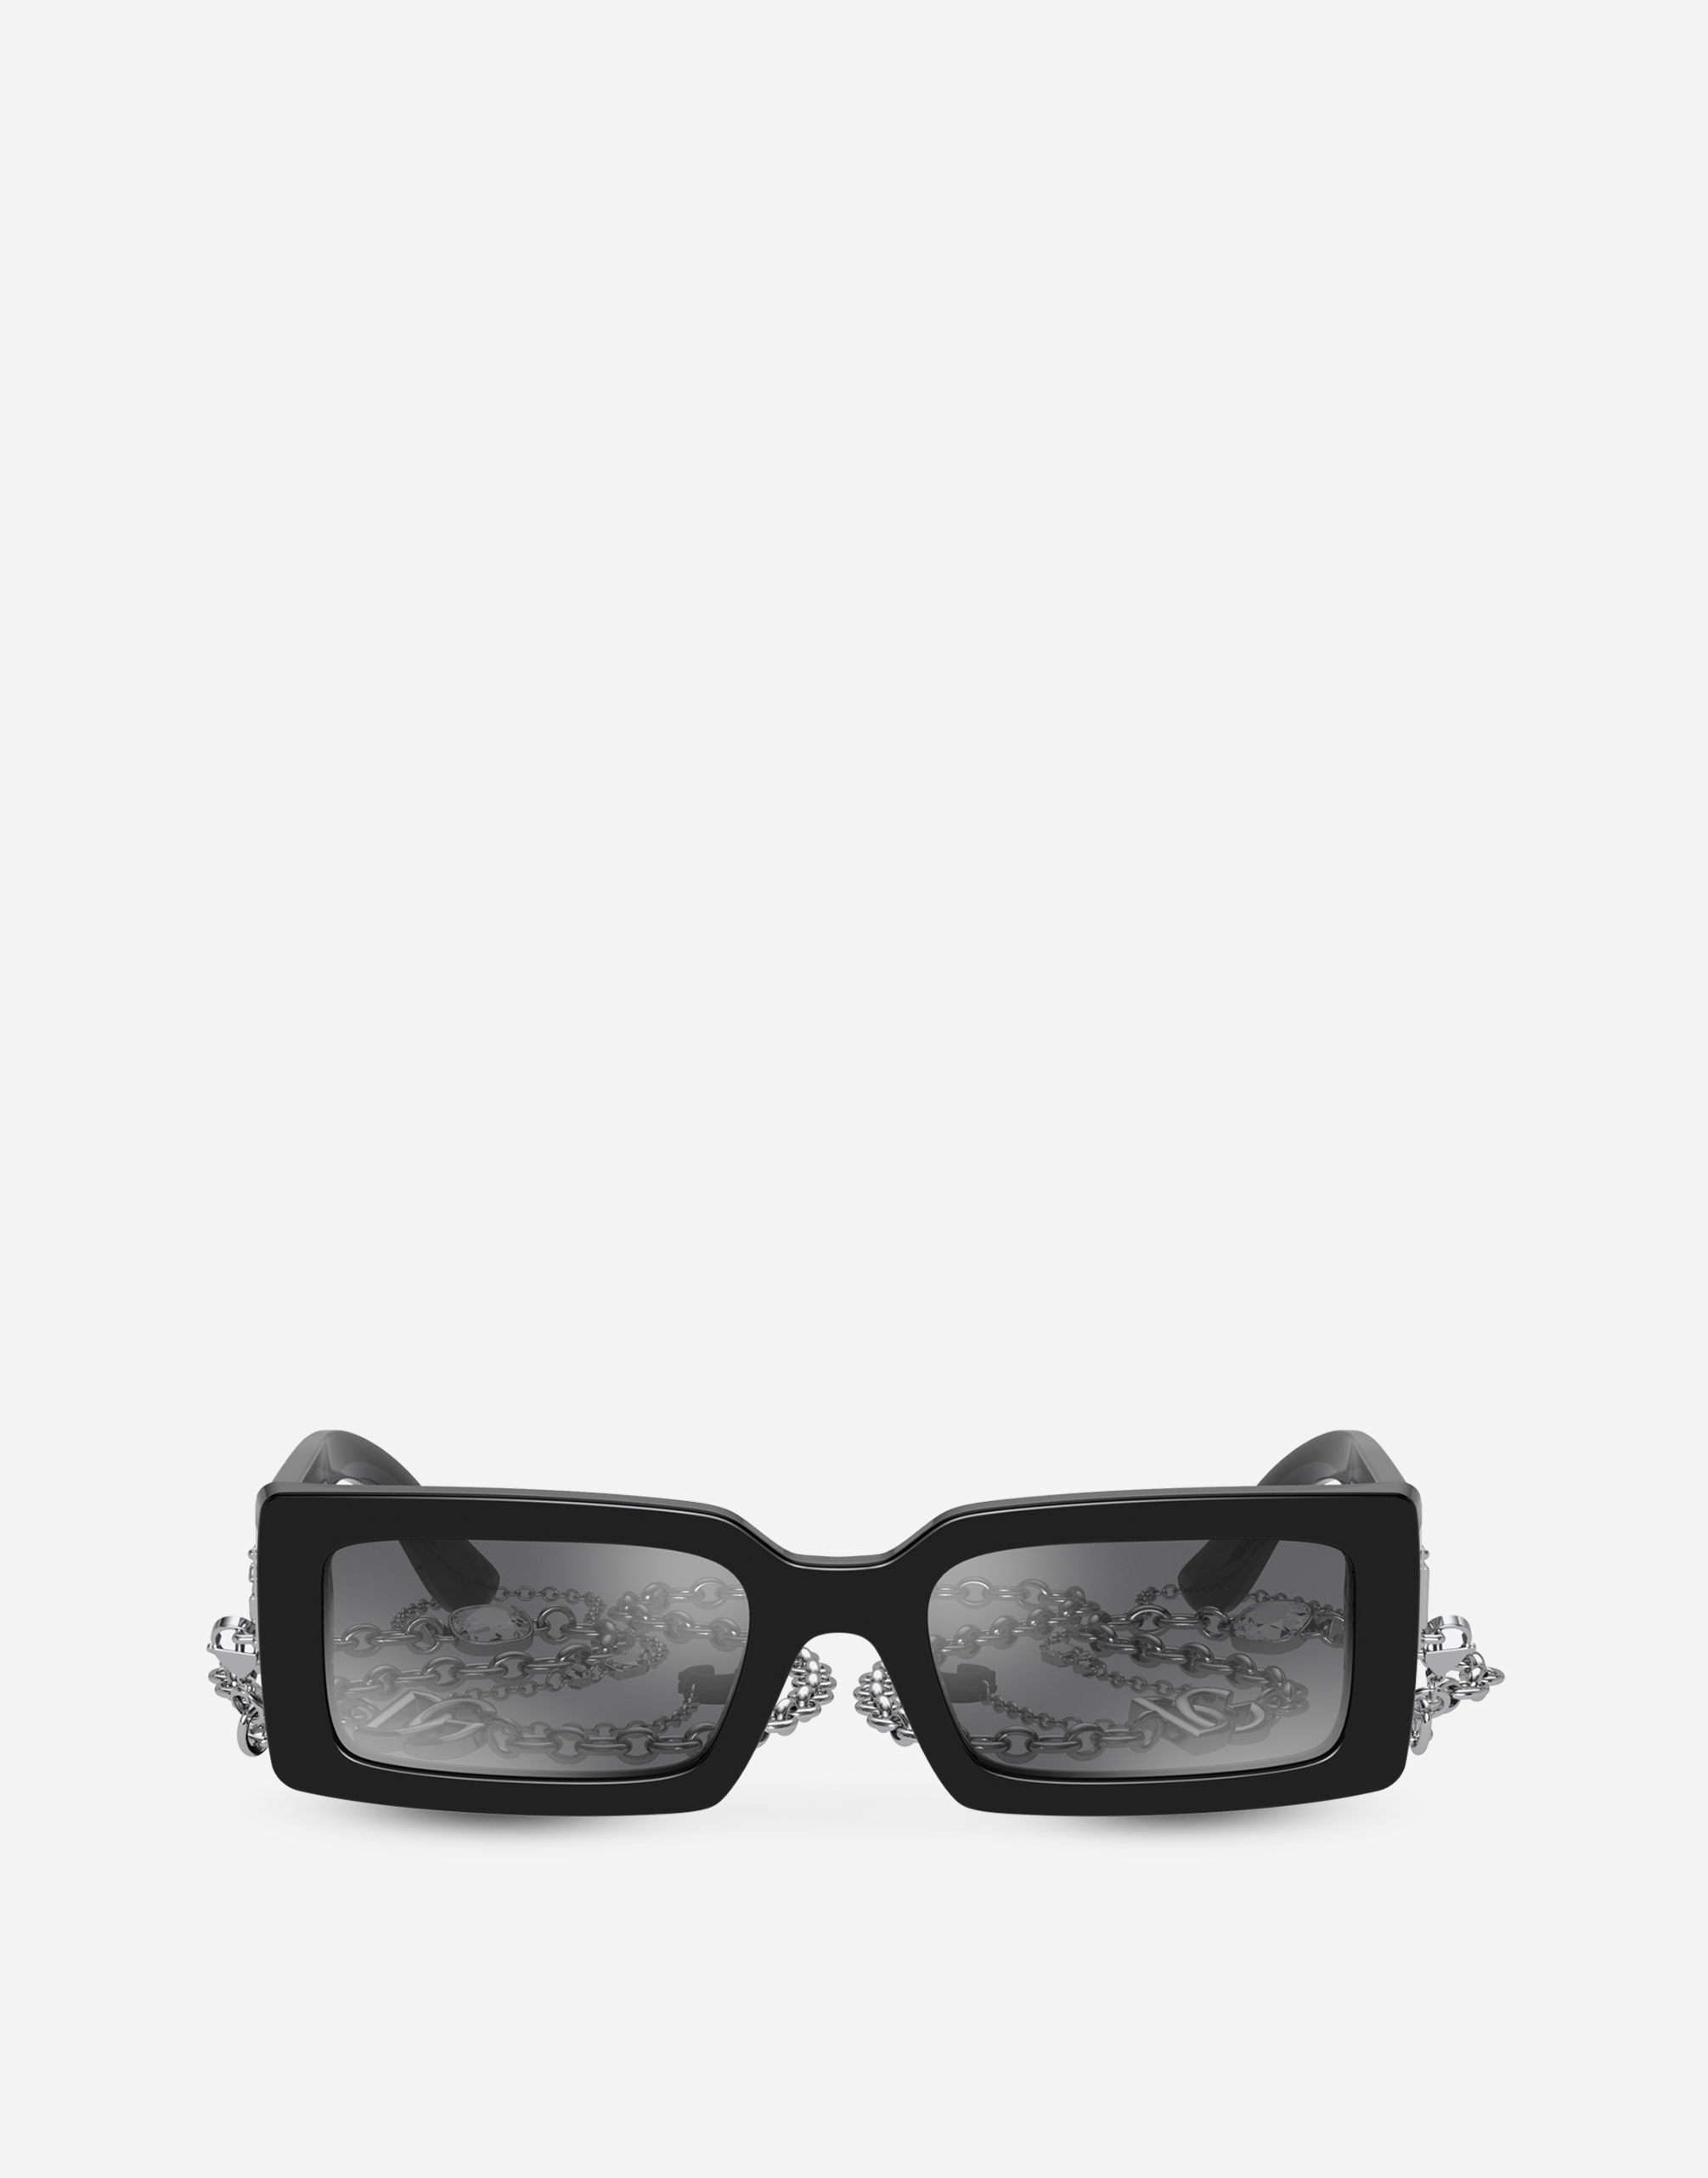 Zebra sunglasses in Black